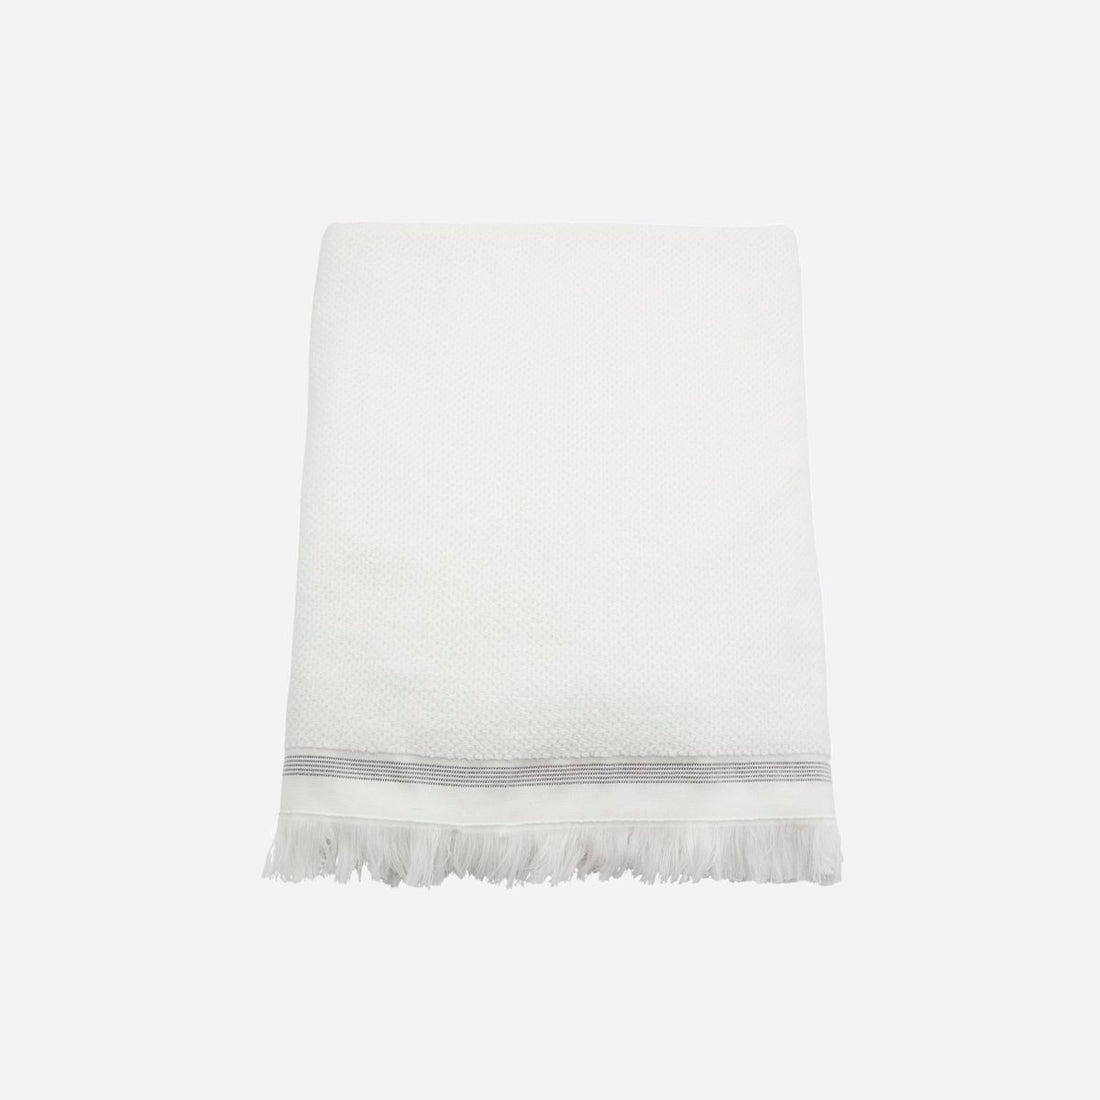 Meraki-Handtuch, 100x180 cm, weiß mit grauen Streifen-L: 100 cm, W: 180 cm